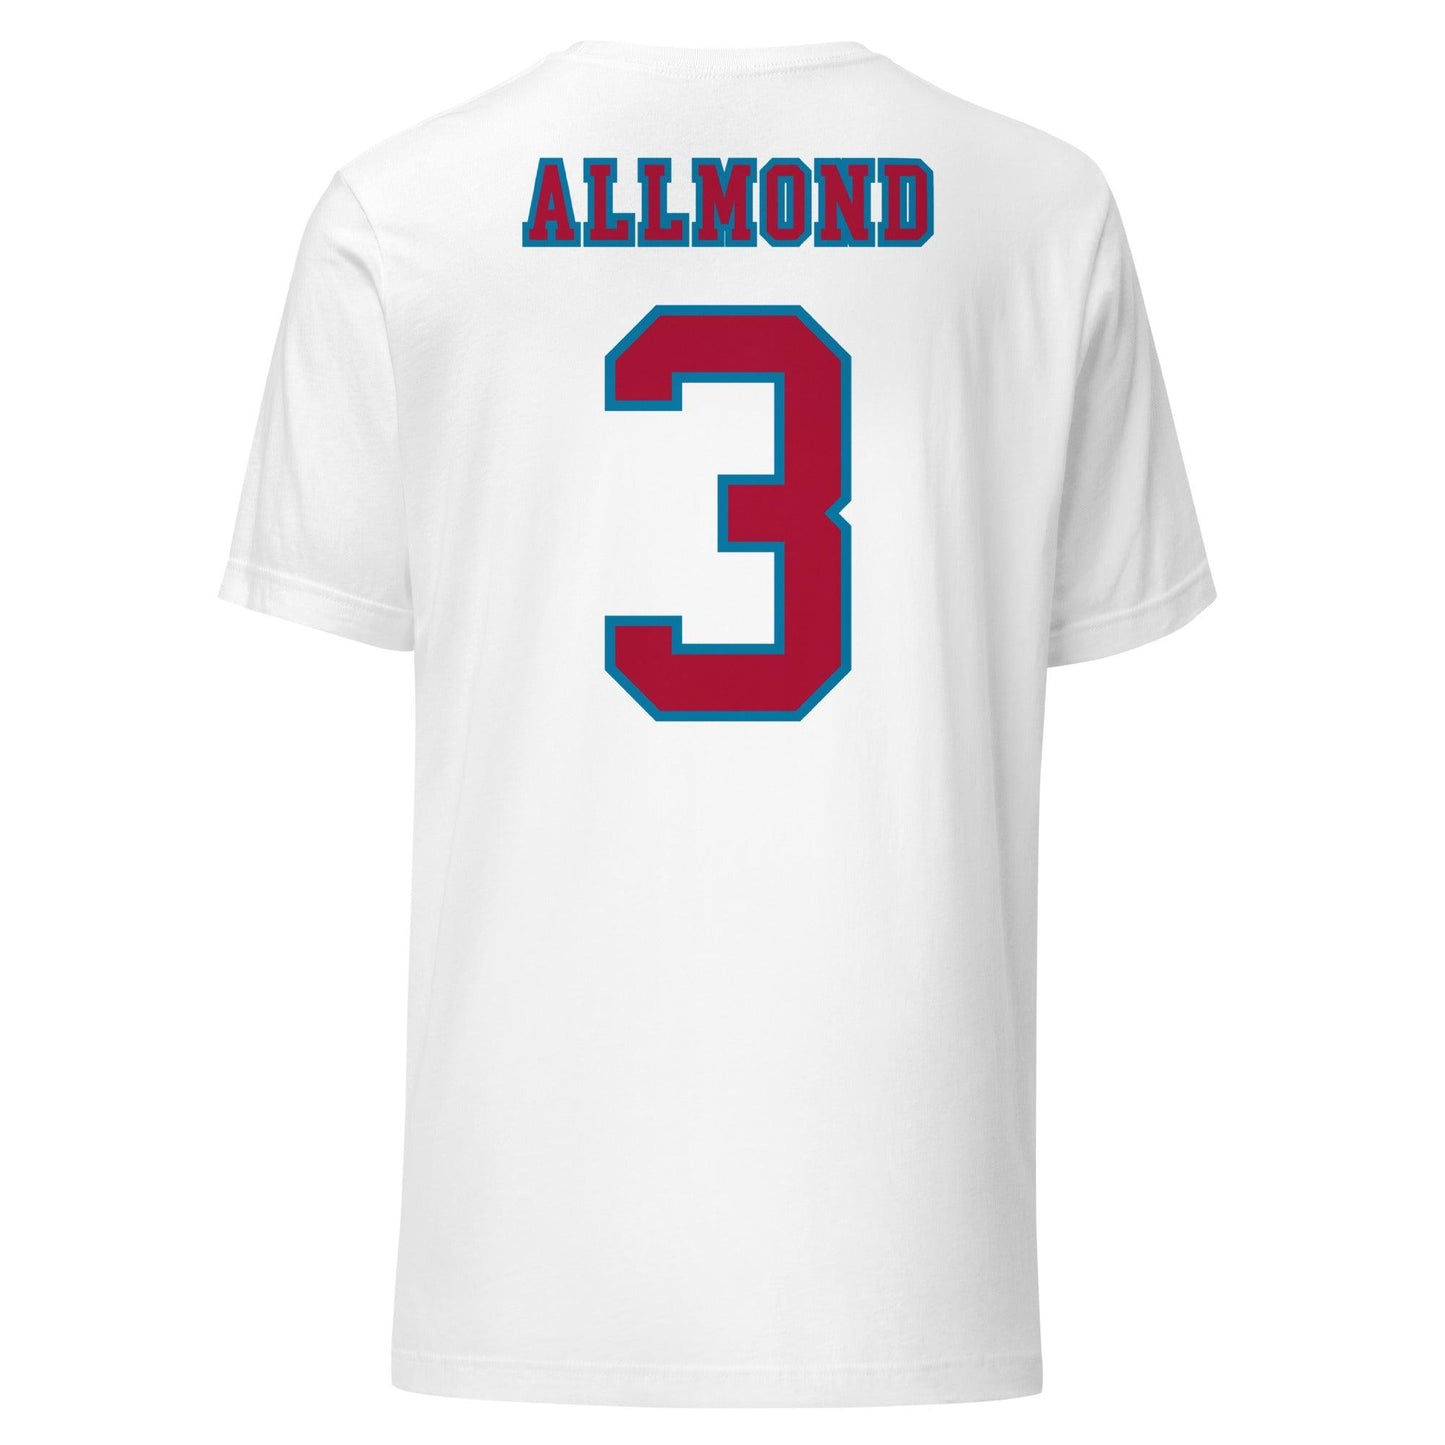 SeQuoia Allmond "Jersey" t-shirt - Fan Arch